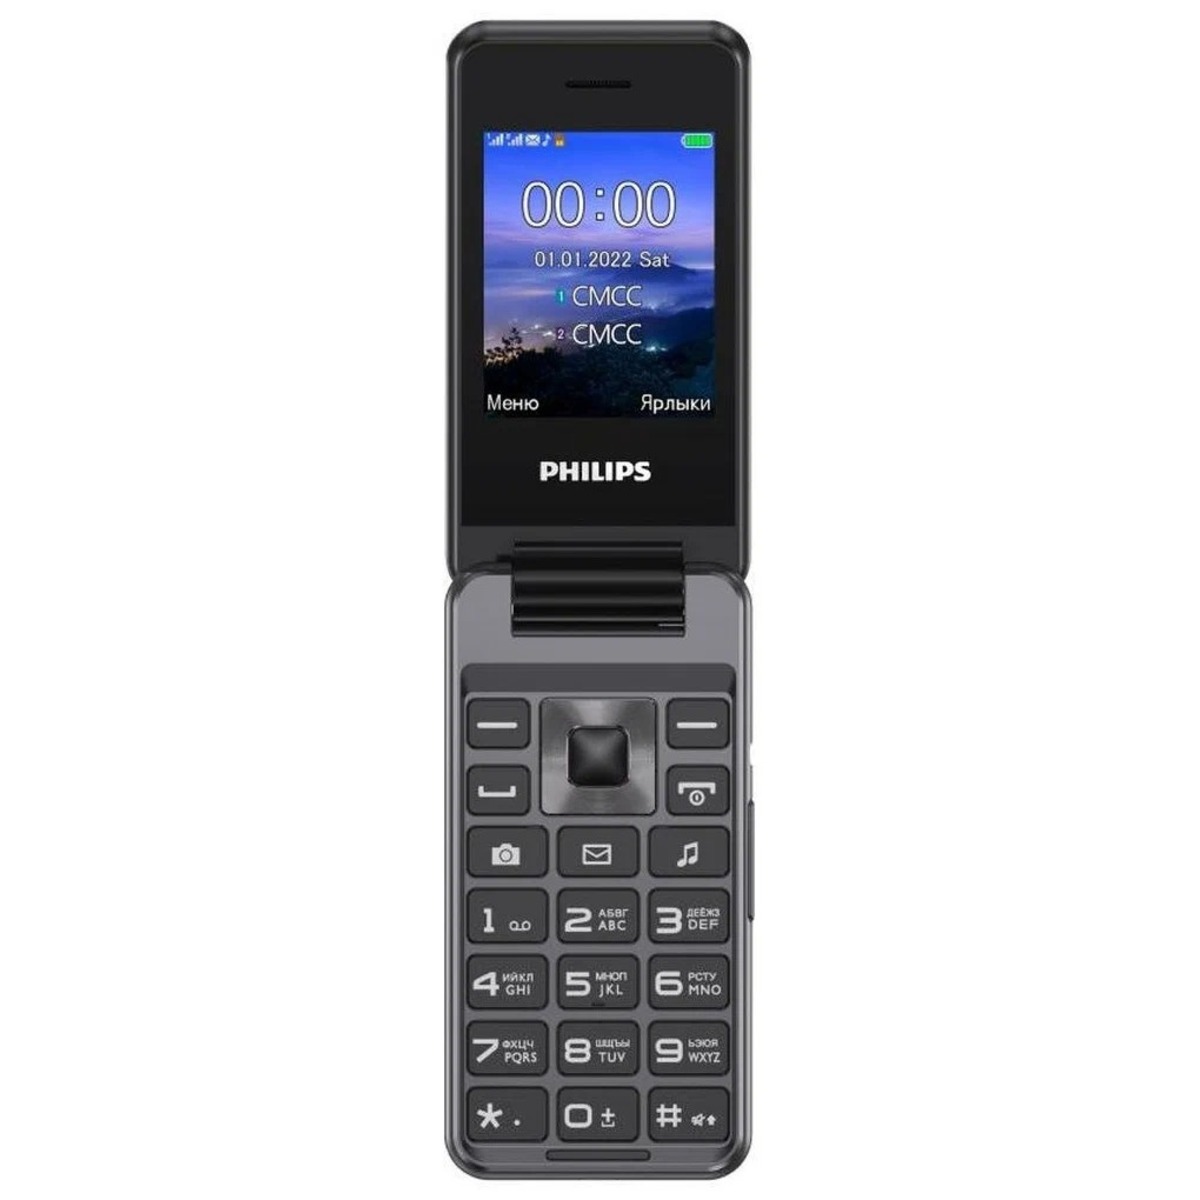 Купить Мобильный телефон Philips Xenium E2601 (Цвет: Dark Gray)  CTE2601DG/00 в СПб недорого | Выгодные цены на Мобильный телефон Philips  Xenium E2601 (Цвет: Dark Gray) CTE2601DG/00, покупка в кредит (Артикул  00334413)